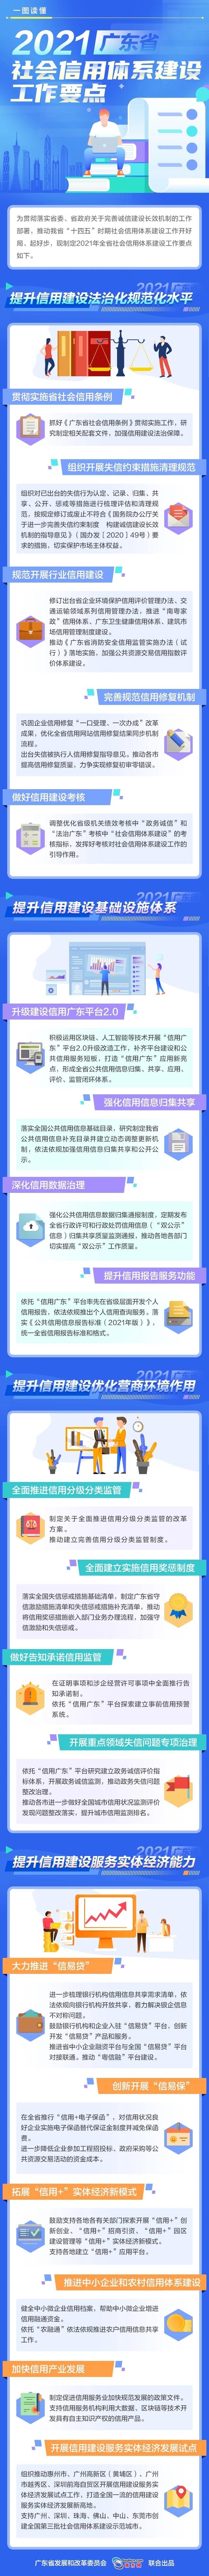 一图读懂  2021广东省社会信用体系建设工作要点.jpg